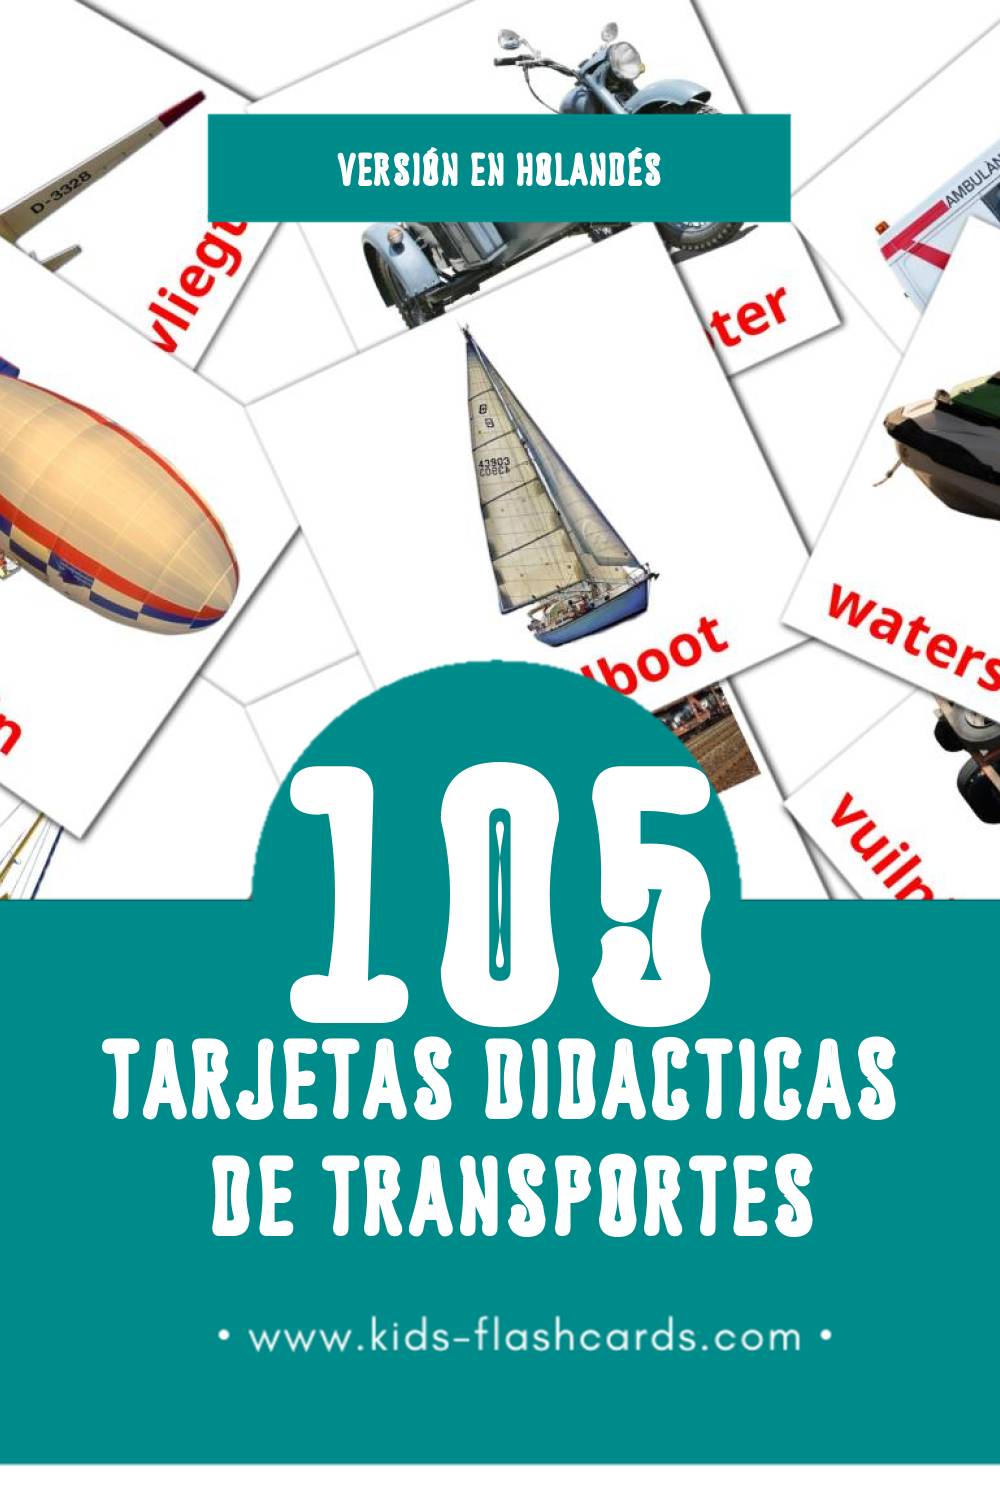 Tarjetas visuales de Vervoer para niños pequeños (105 tarjetas en Holandés)